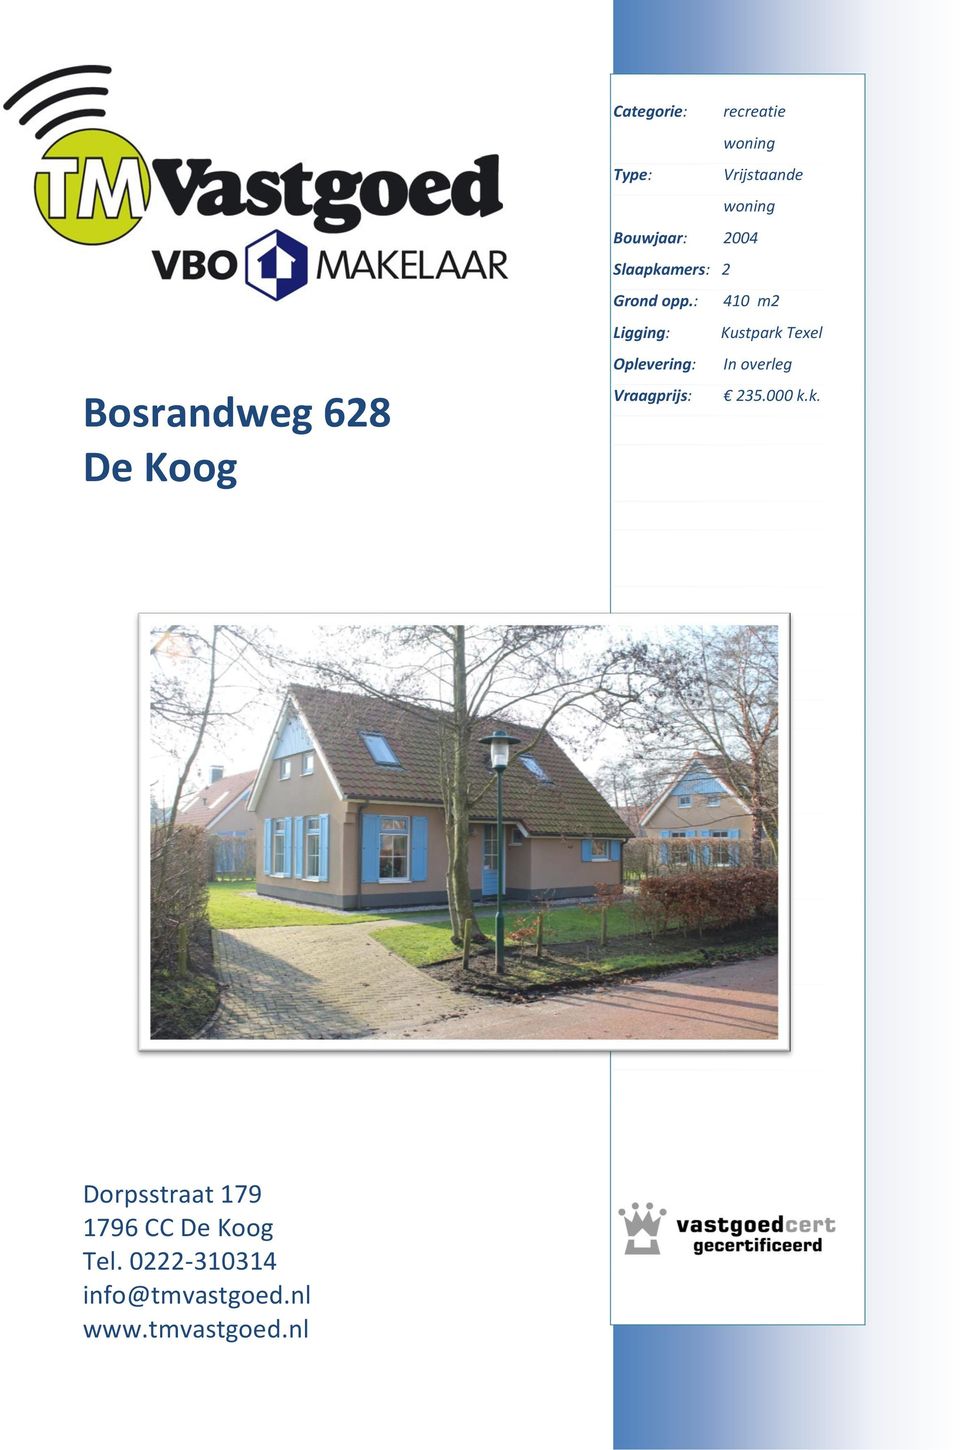 : 410 m2 Ligging: Kustpark Texel Oplevering: In overleg Vraagprijs: